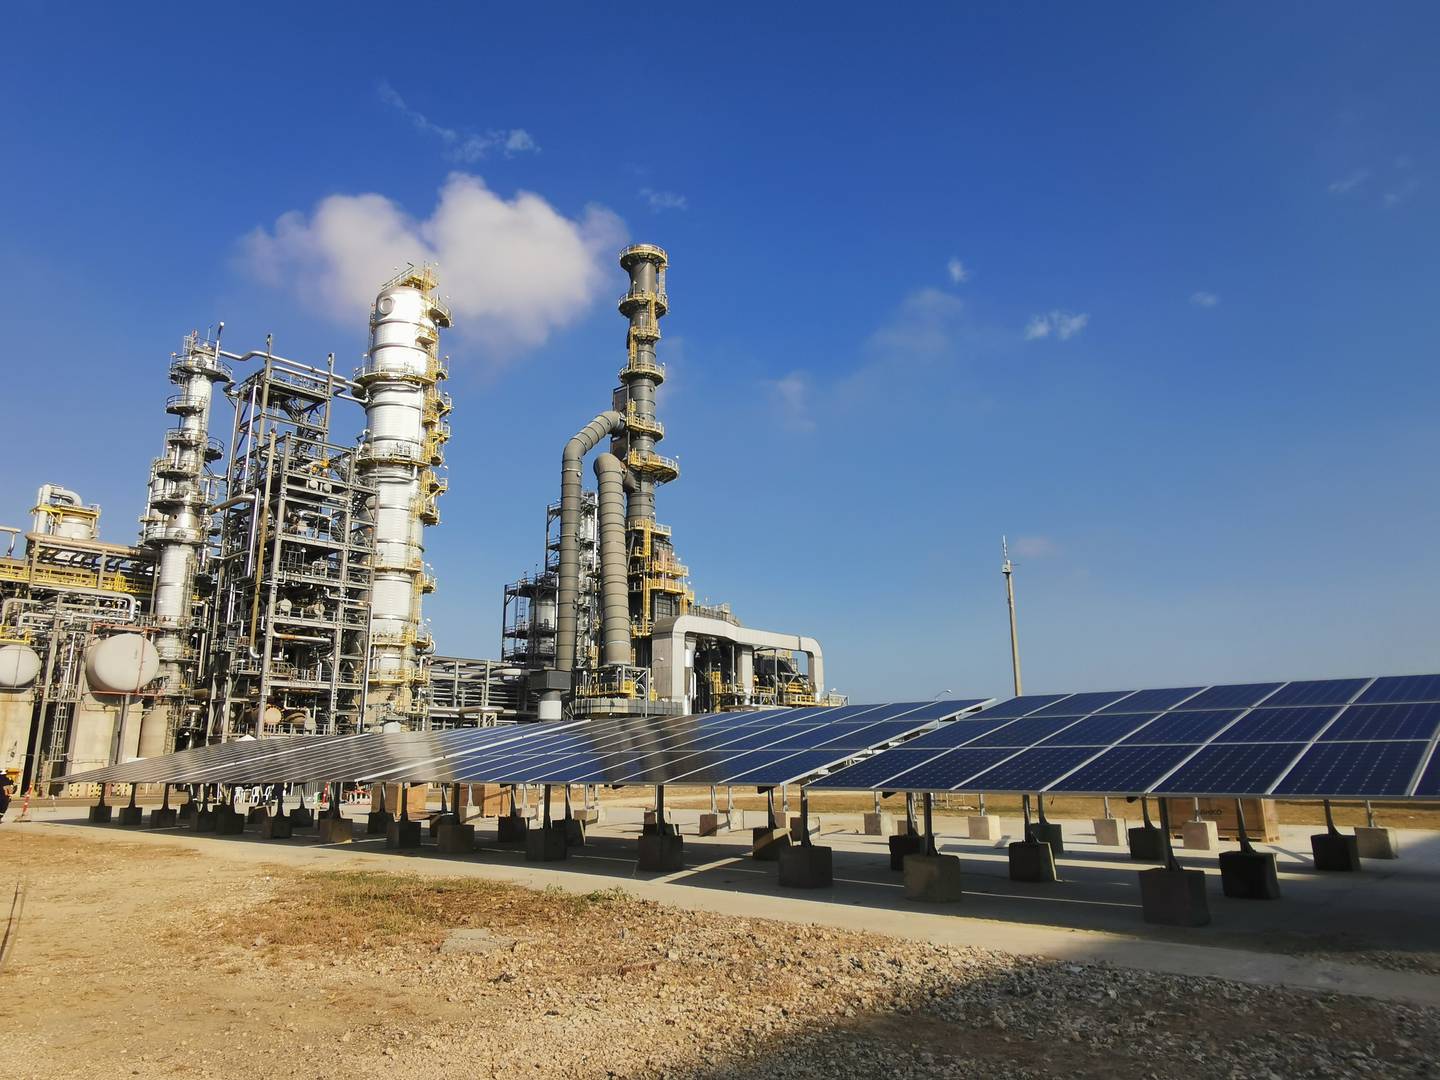 En marzo, el Grupo Ecopetrol inició la producción de hidrógeno verde con un electrolizador de 50 kilovatios y 270 paneles solares en la refinería de Cartagena.dfd